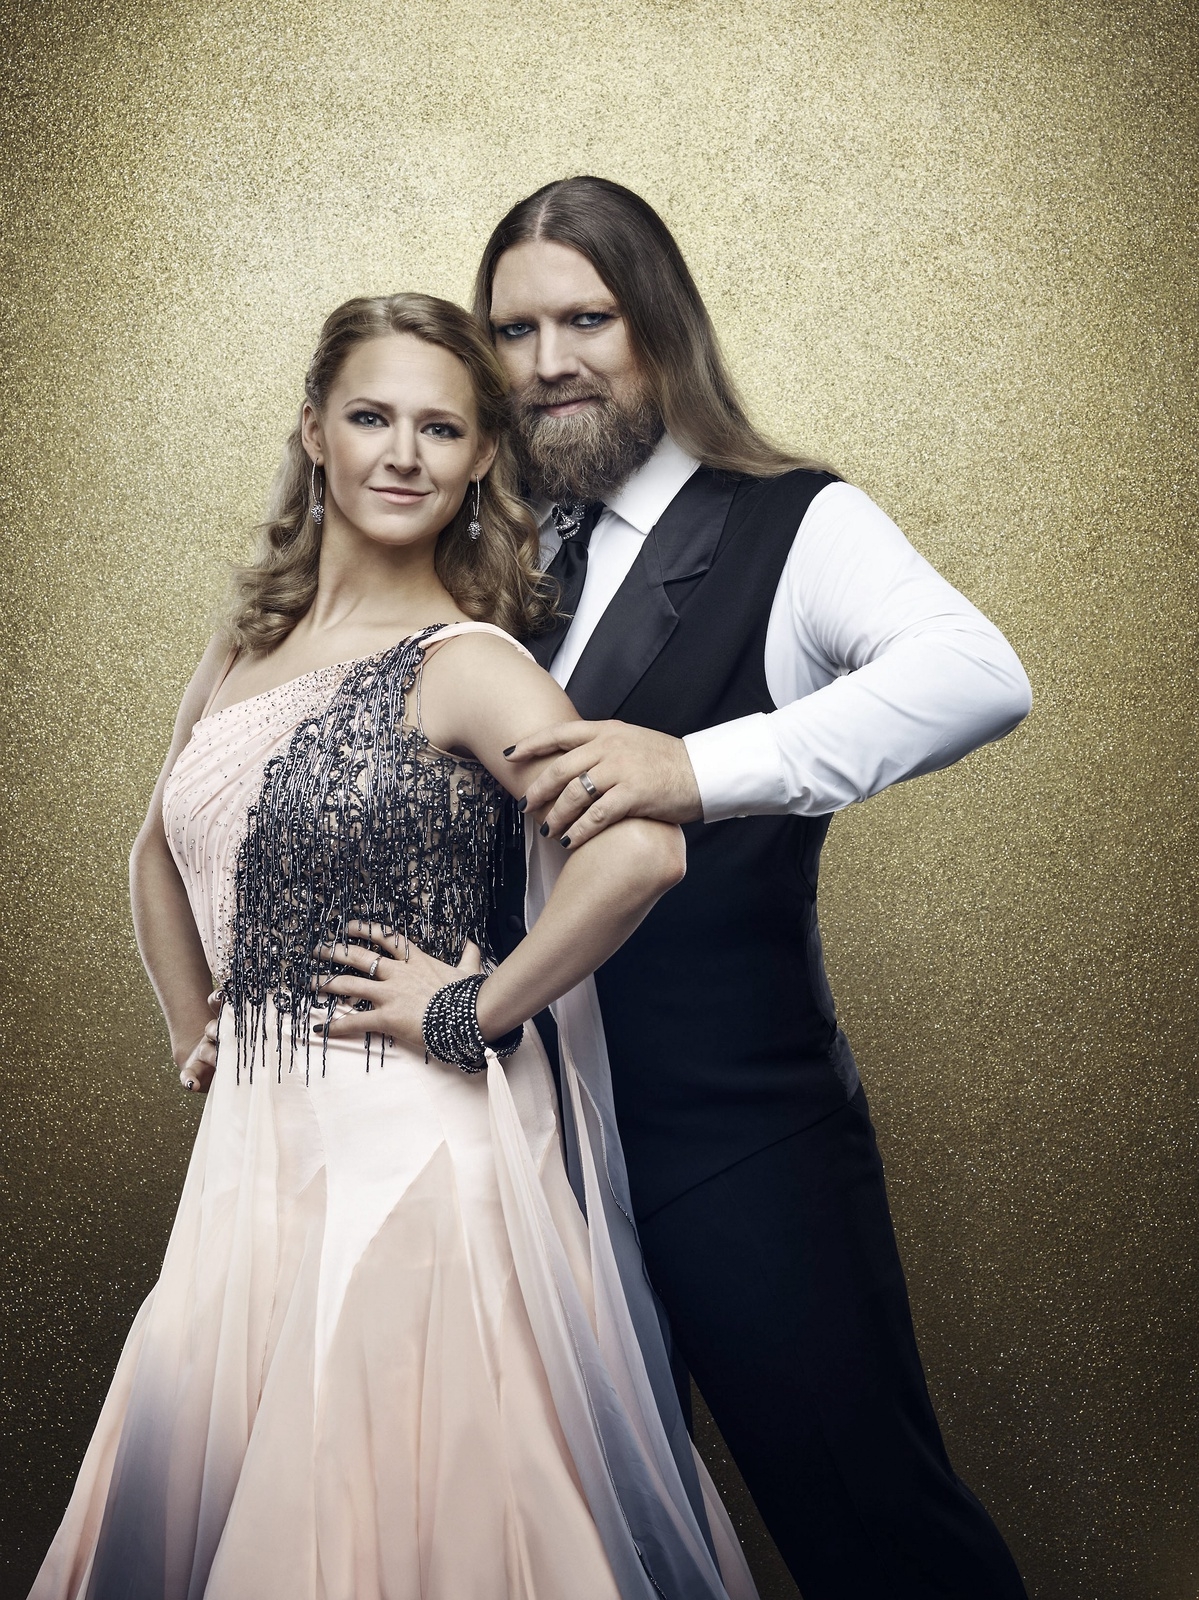 Maria Zimmerman och Rickard Söderberg dansar i Let’s Dance i TV4 i kväll.
Foto: TV4